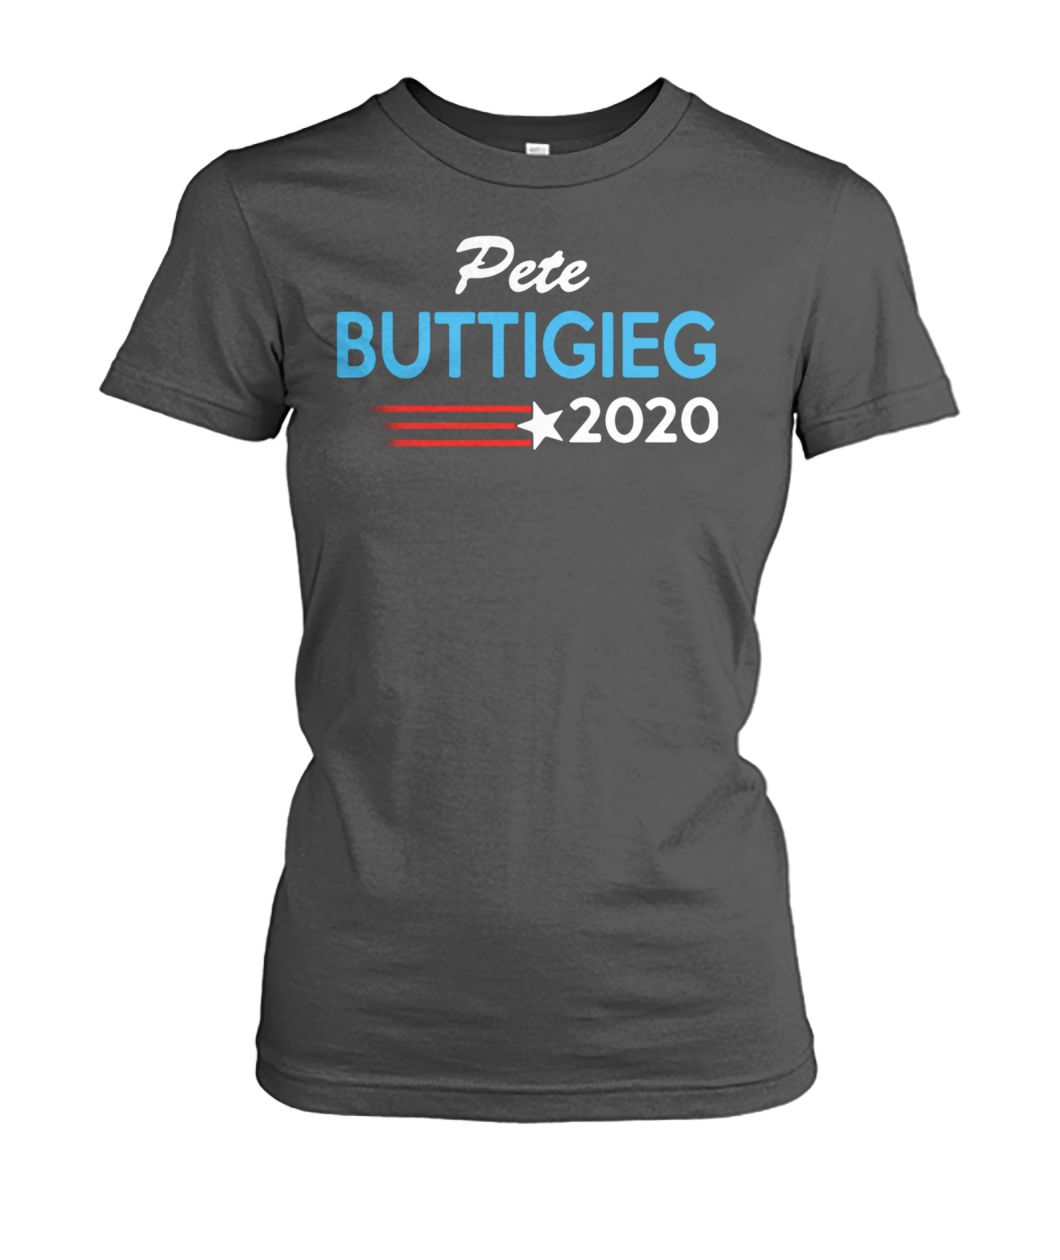 Pete buttigieg for president 2020 women's crew tee